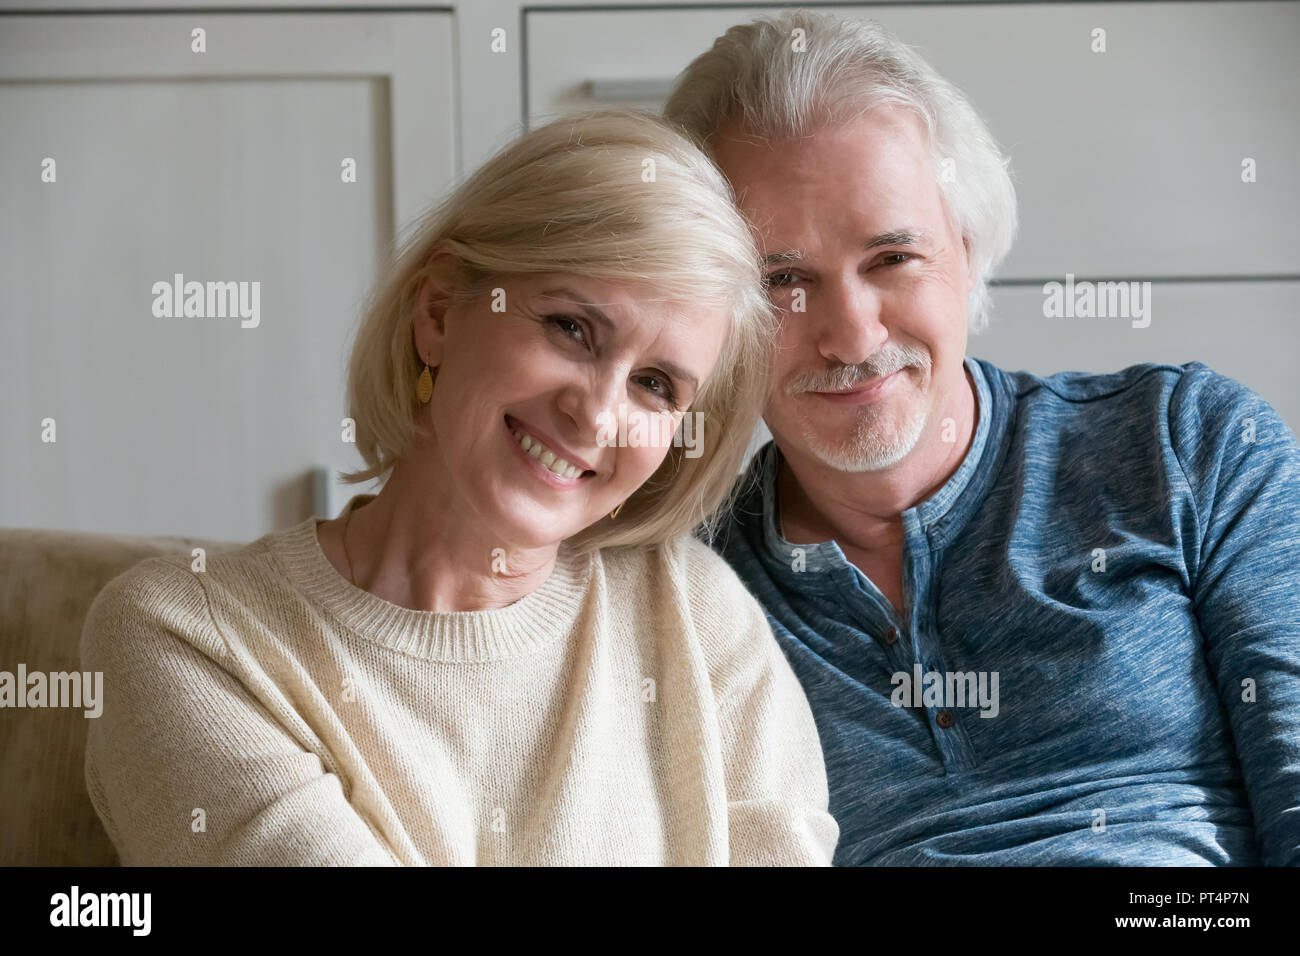 Headshot portrait of smiling loving mature couple feeling happy Stock Photo